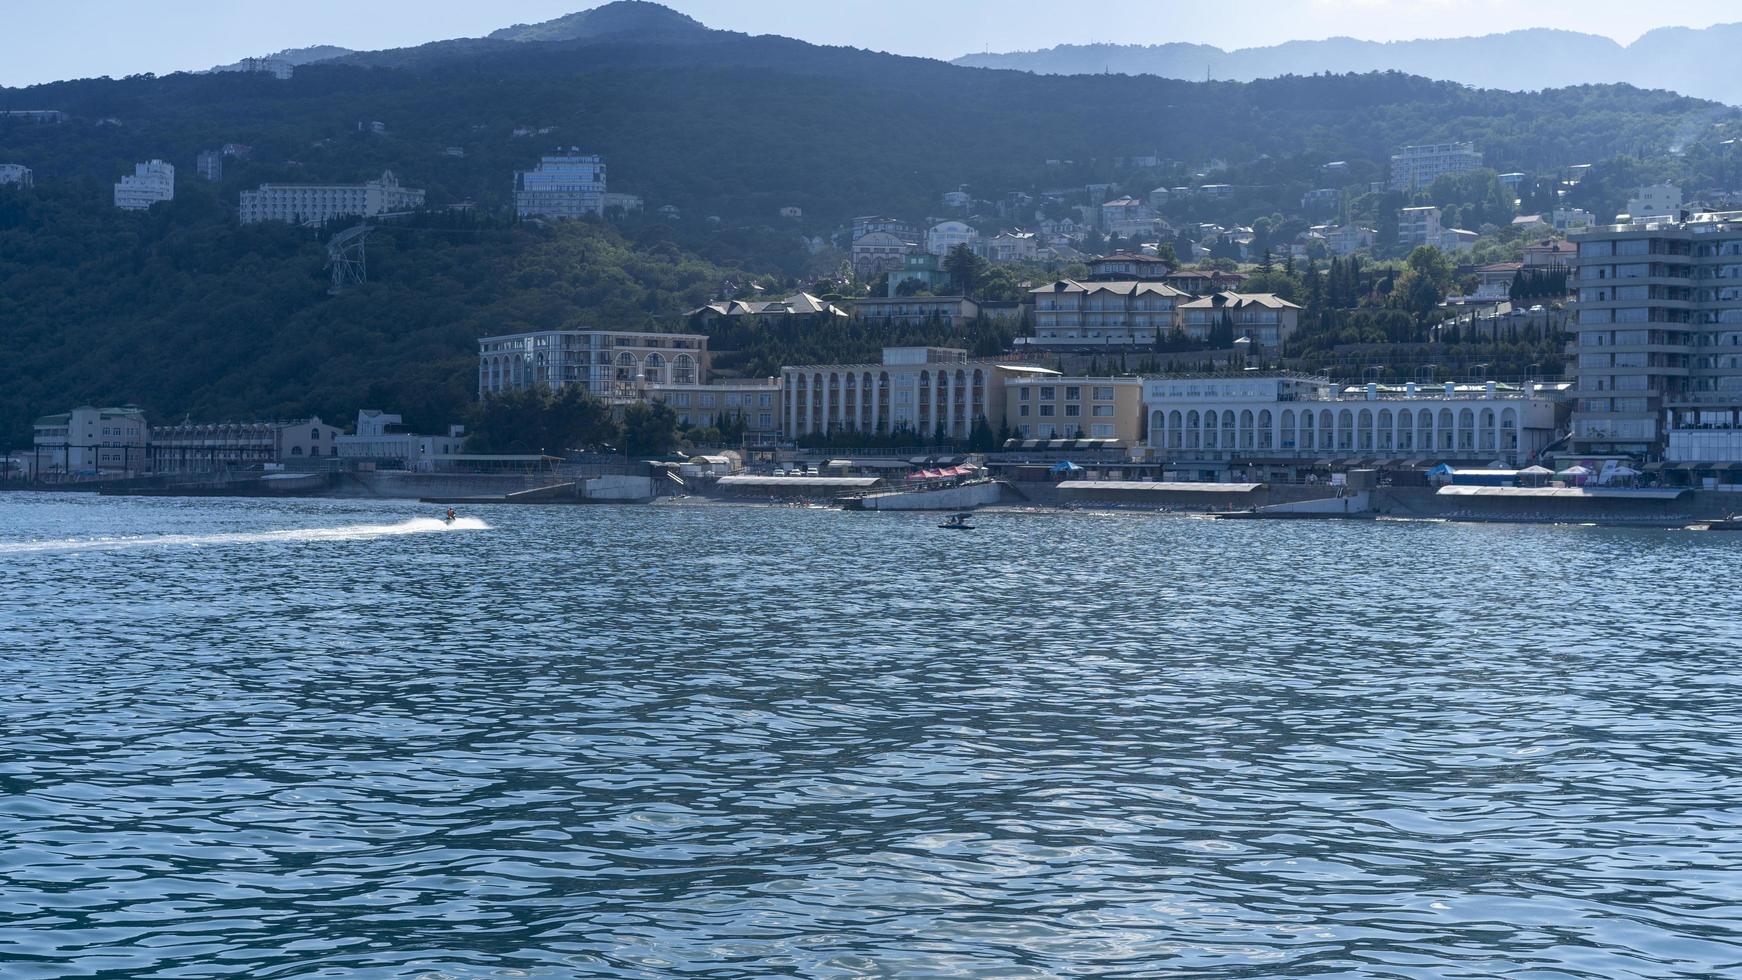 paisaje marino con vistas a la costa de yalta foto